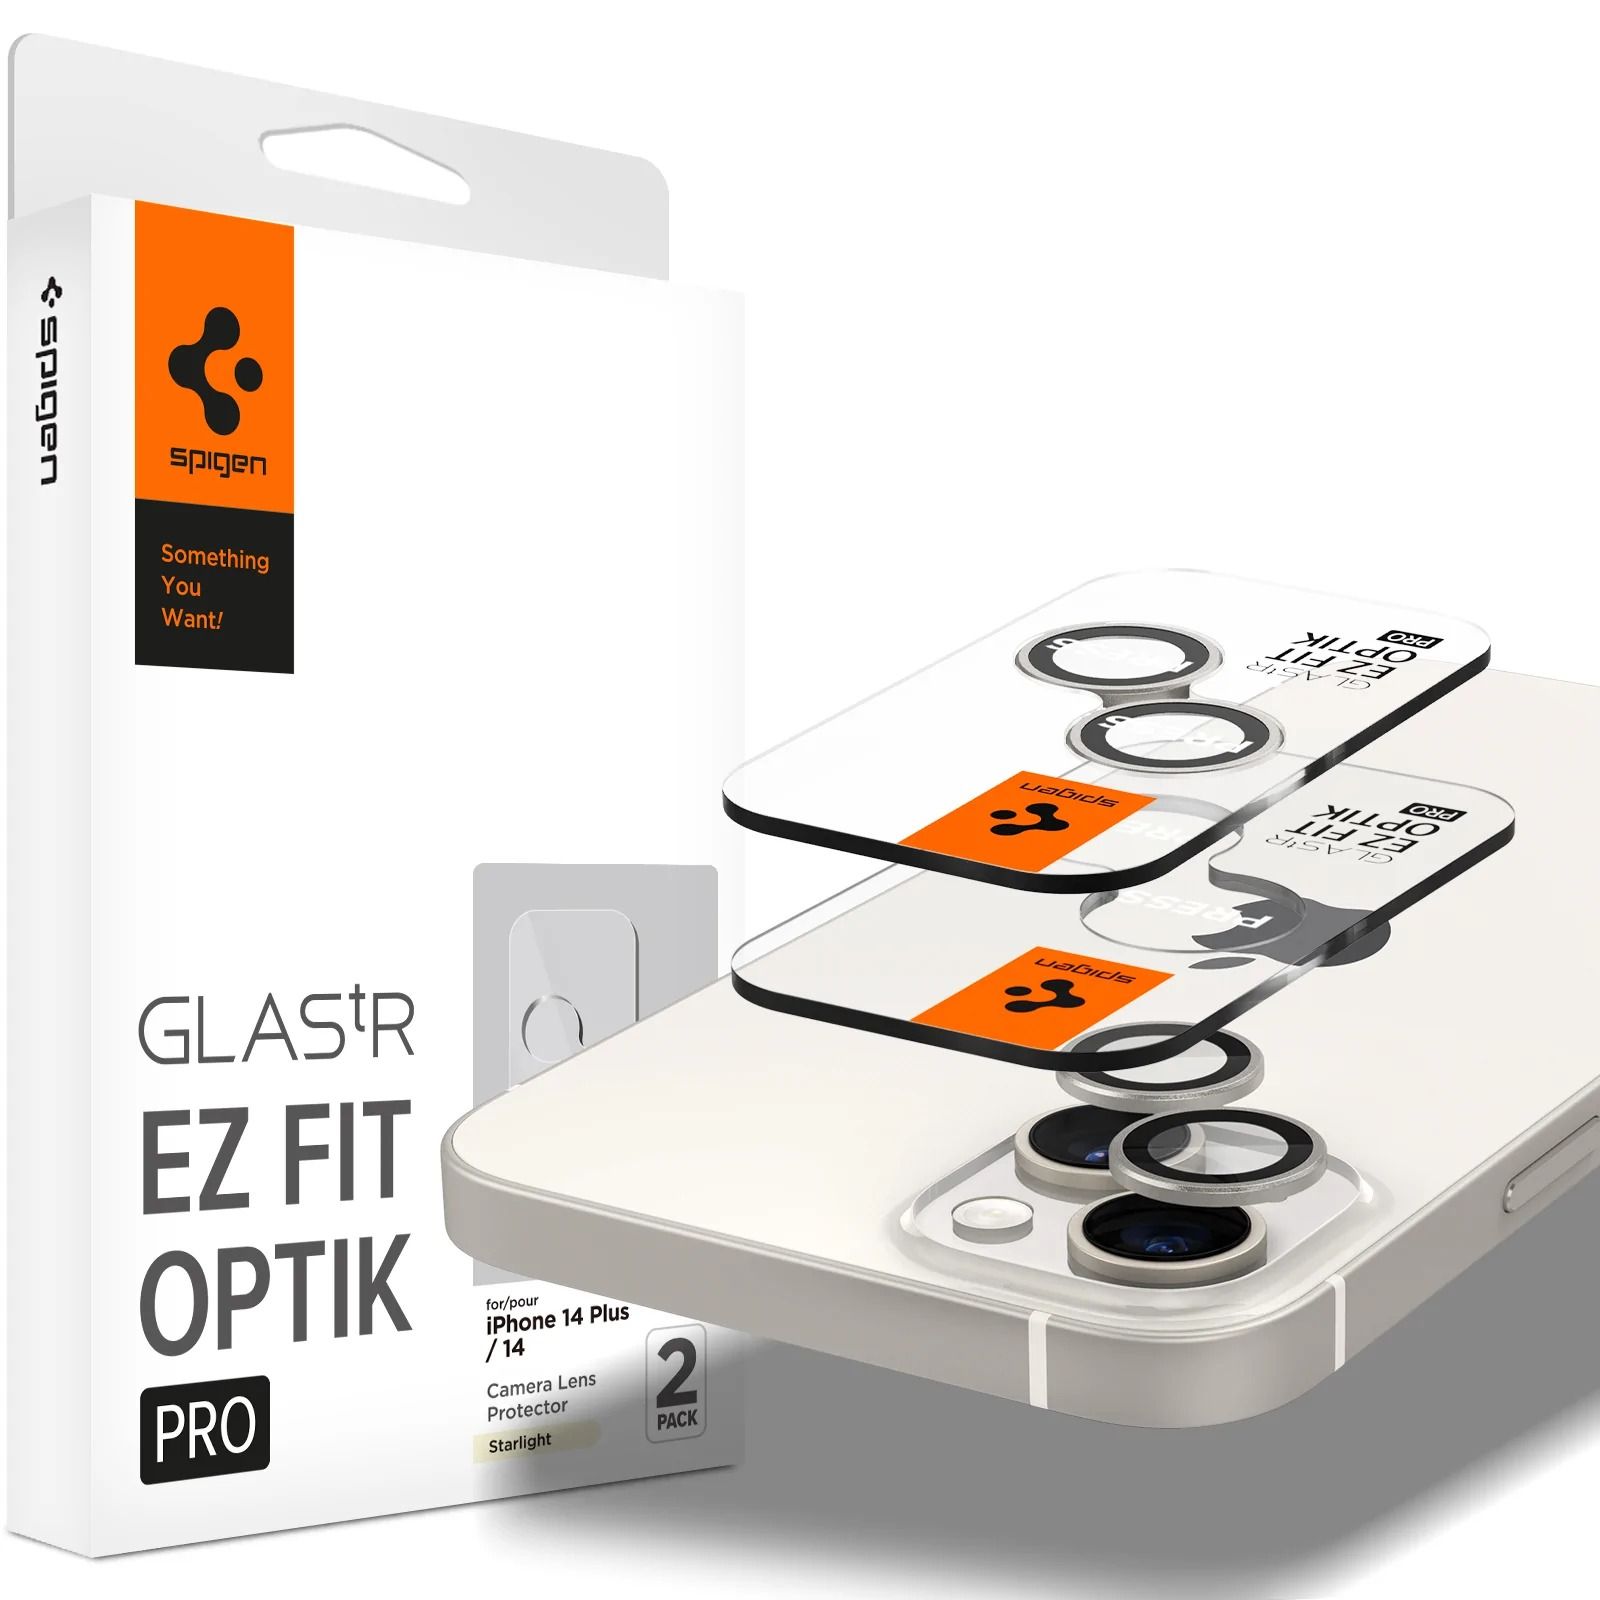 Защитное стекло для камеры Spigen для iPhone 14 Plus / 14 - GLAS.tR EZ Fit Optik Pro - Про